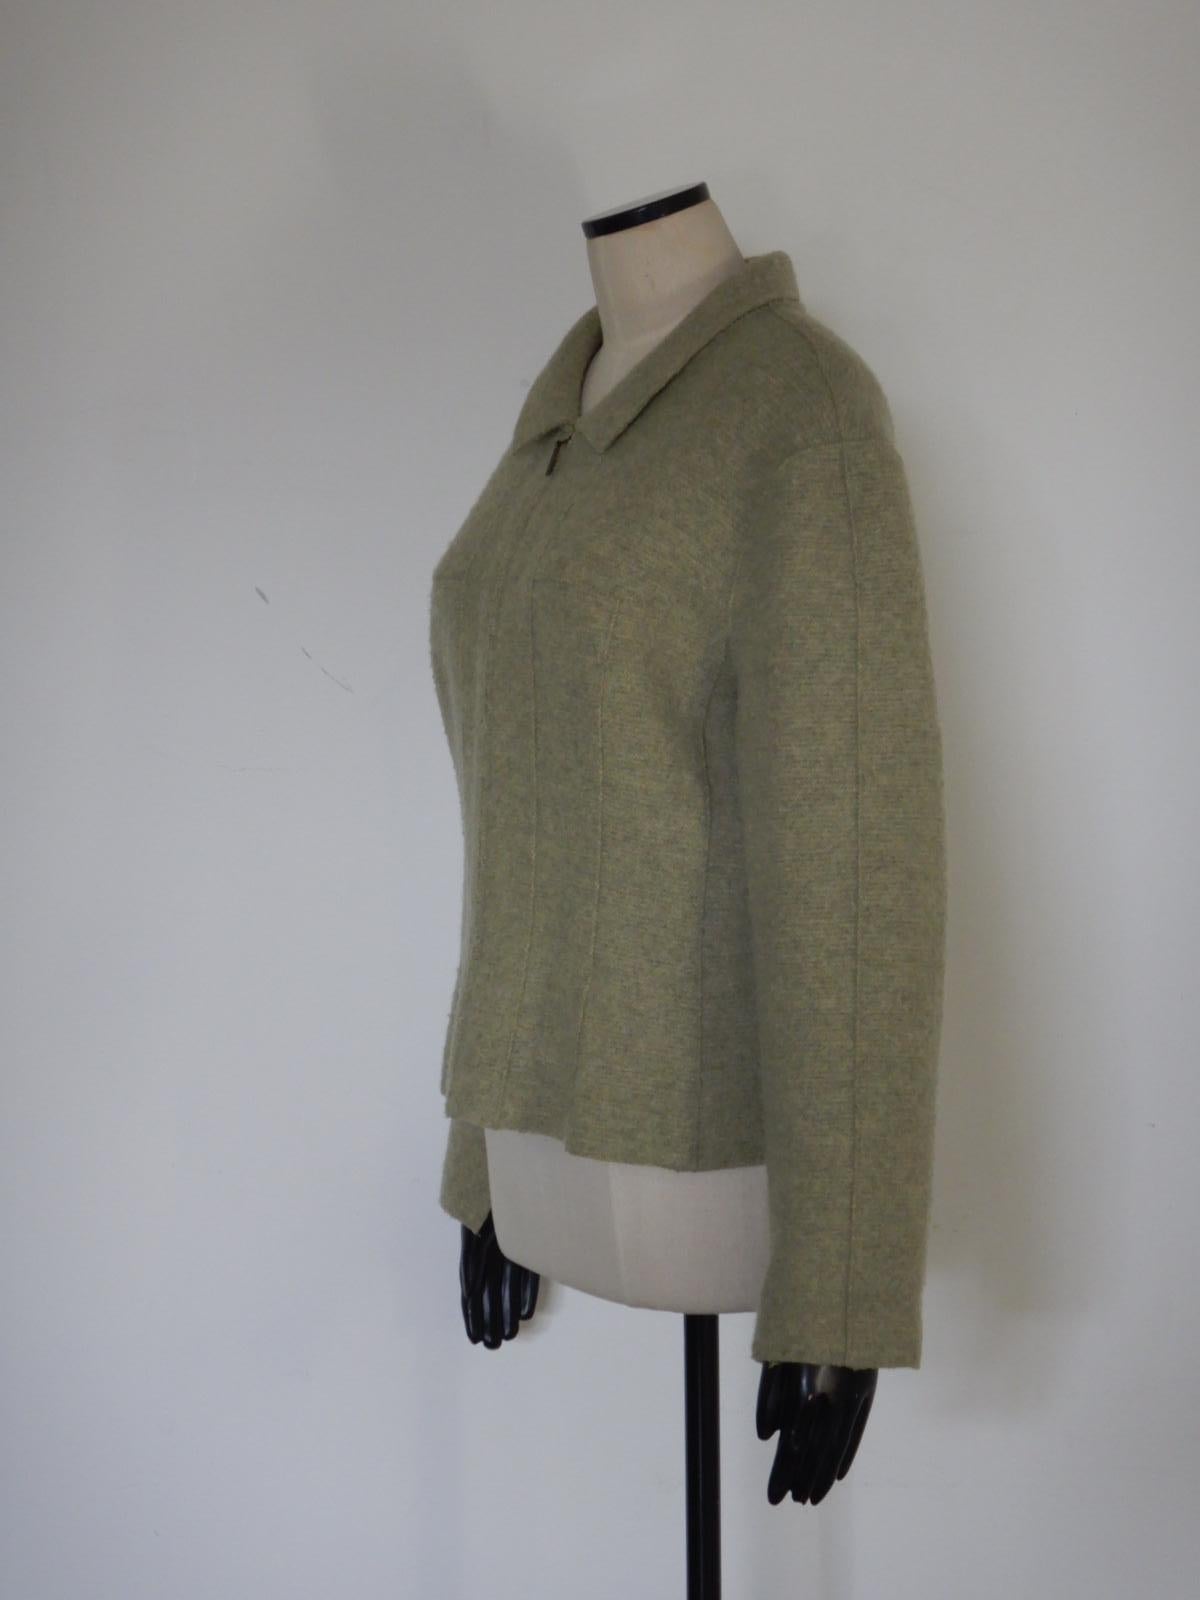 Il s'agit d'une veste en laine Chanel à fermeture éclair, de couleur vert clair, réalisée pour la collection Automne 1999. Il y a une encoche en V sur le côté intérieur des poignets.

La veste est étiquetée taille 44.

Cet article est en bon état